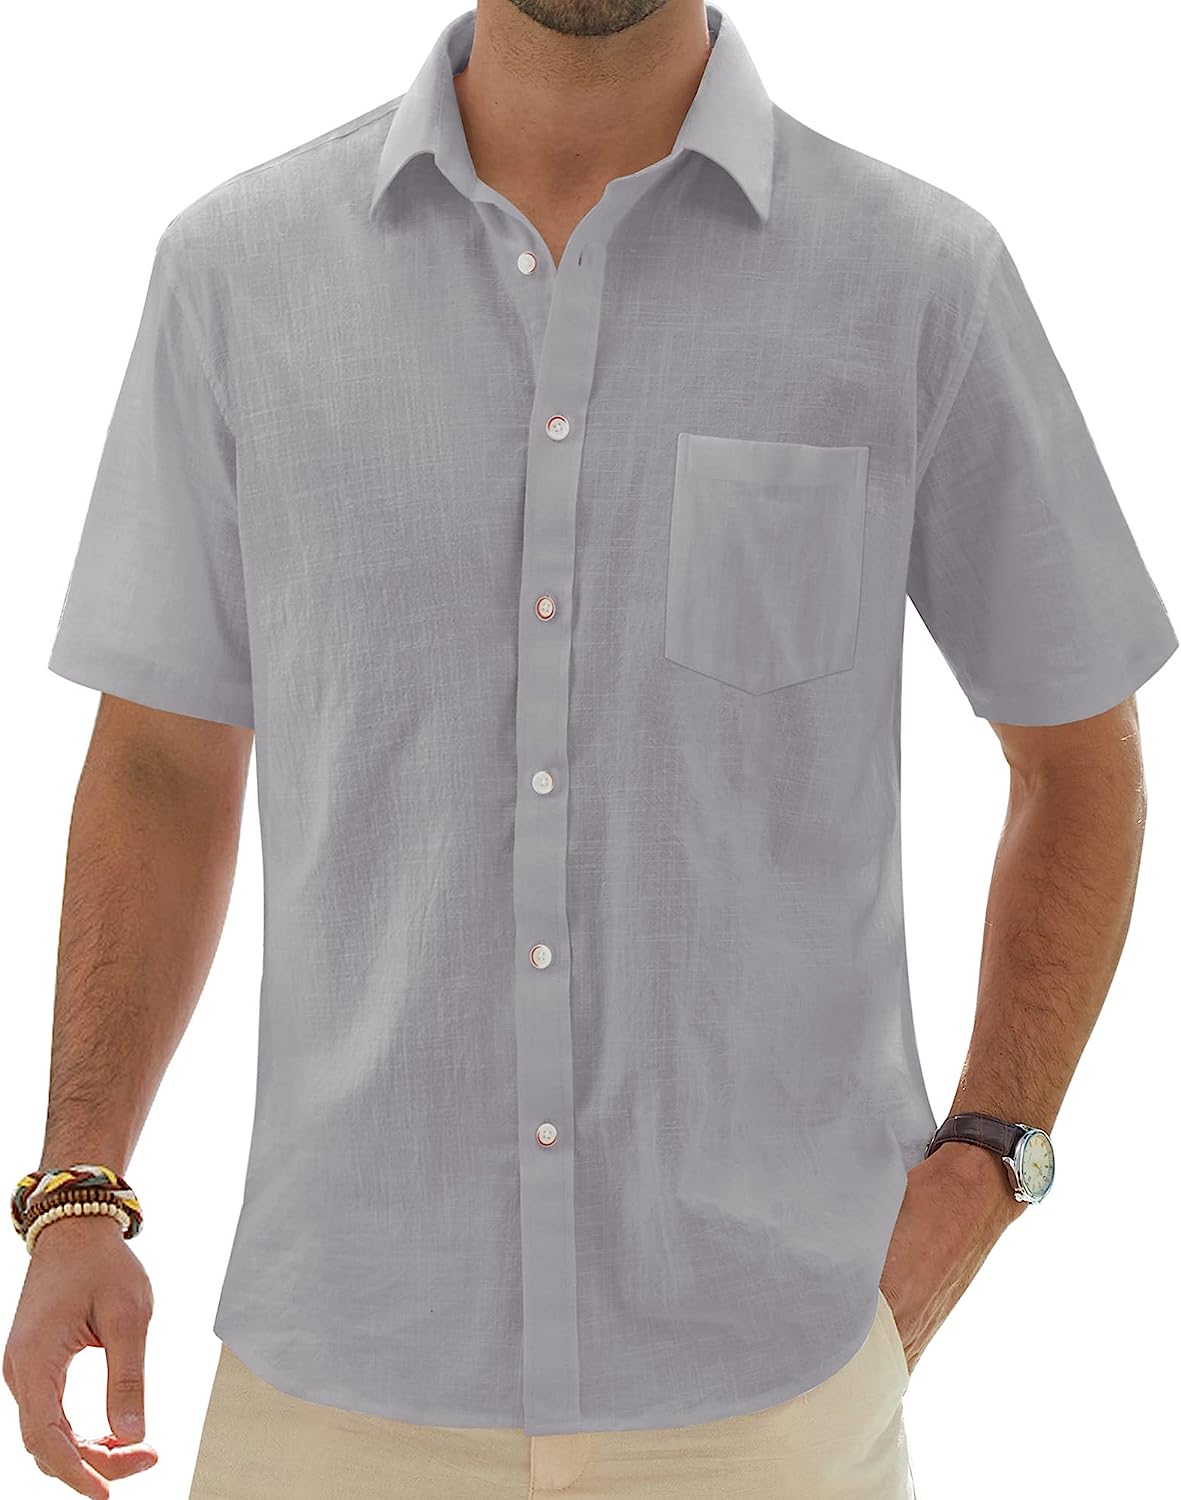  J.VER Men's Short Sleeve Linen Button Down Shirts